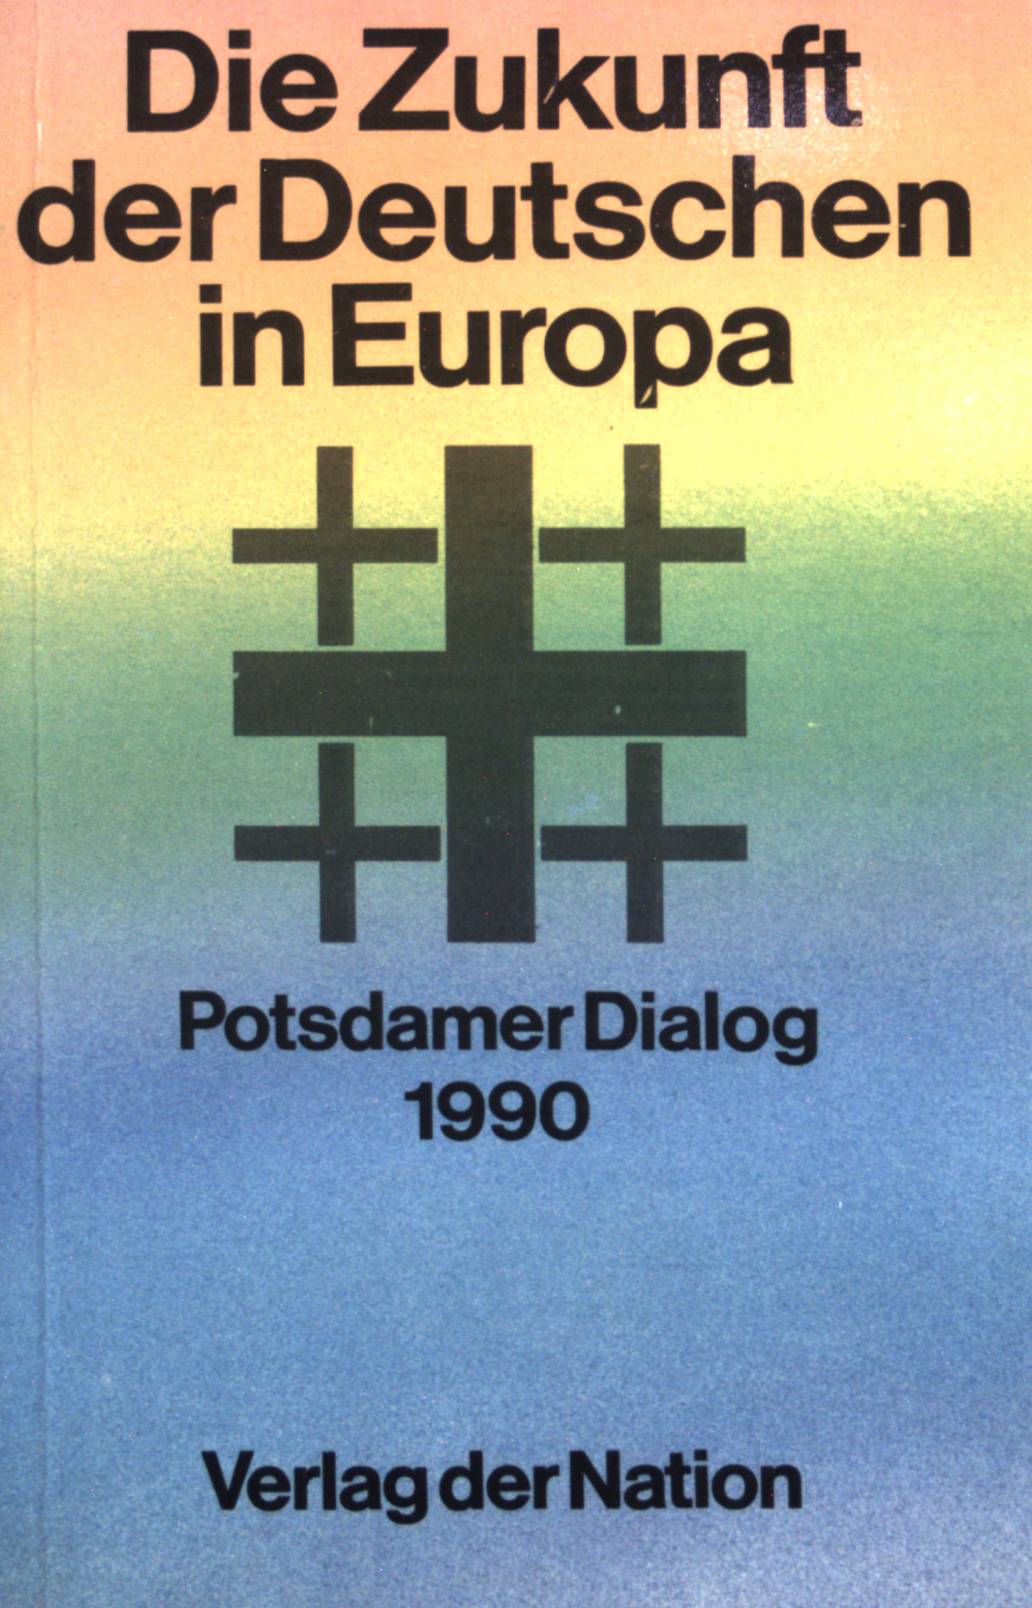 Die Zukunft der Deutschen in Europa: Potsdamer Dialog 1990. - Stolpe, Manfred